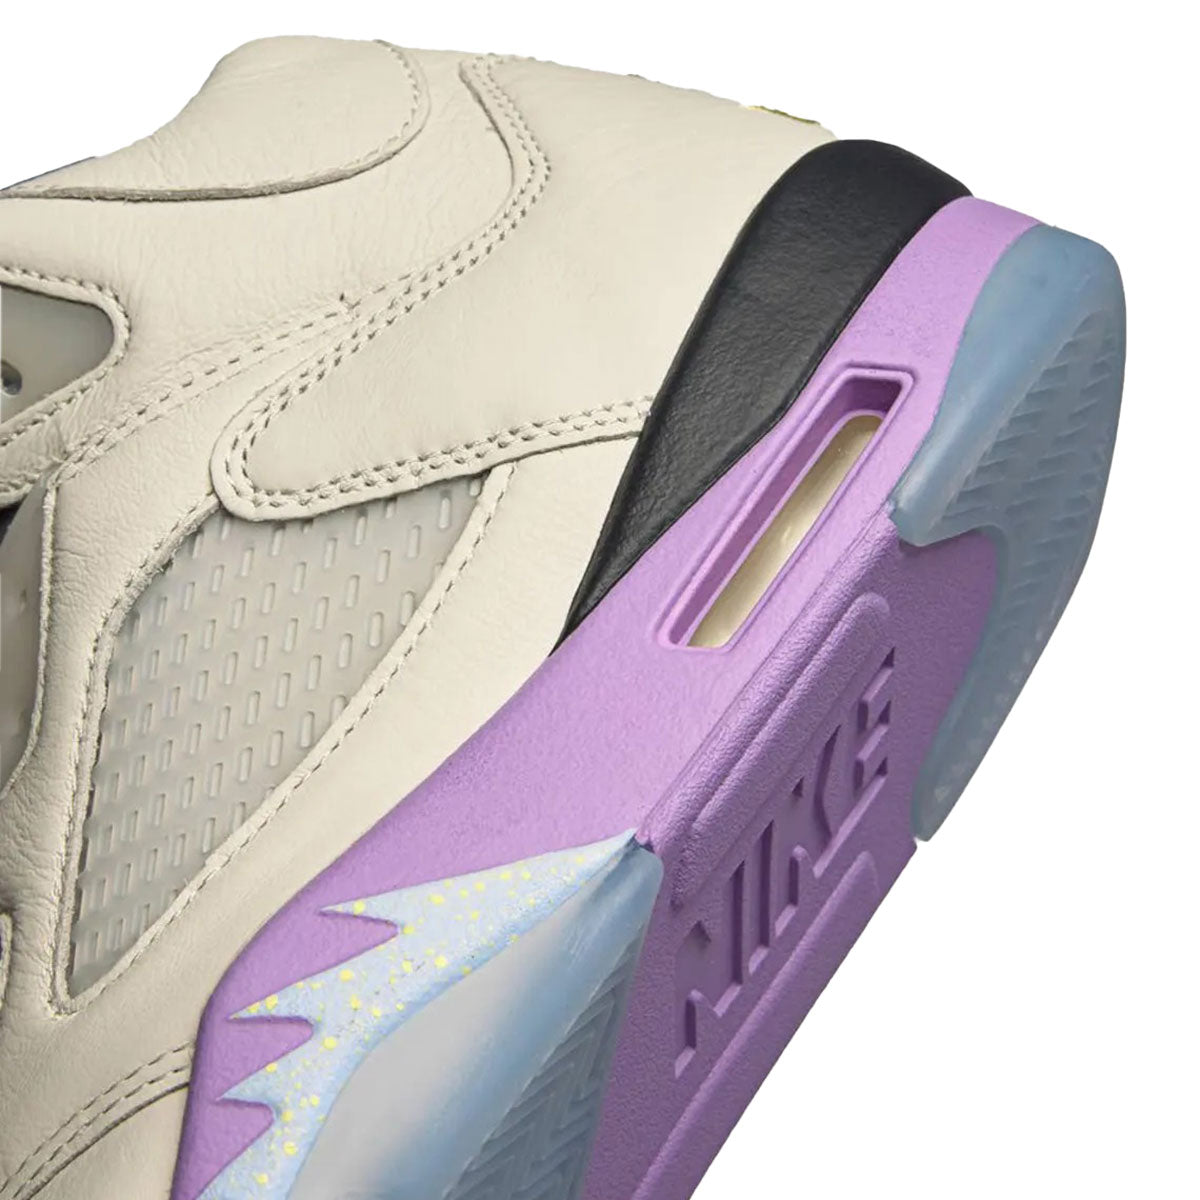 DJ Khaled × Nike Air Jordan 5 Retro SP Sail DJ キャレド × ナイキ エアジョーダン 5 レトロ SP "セイル"【DV4982-175】